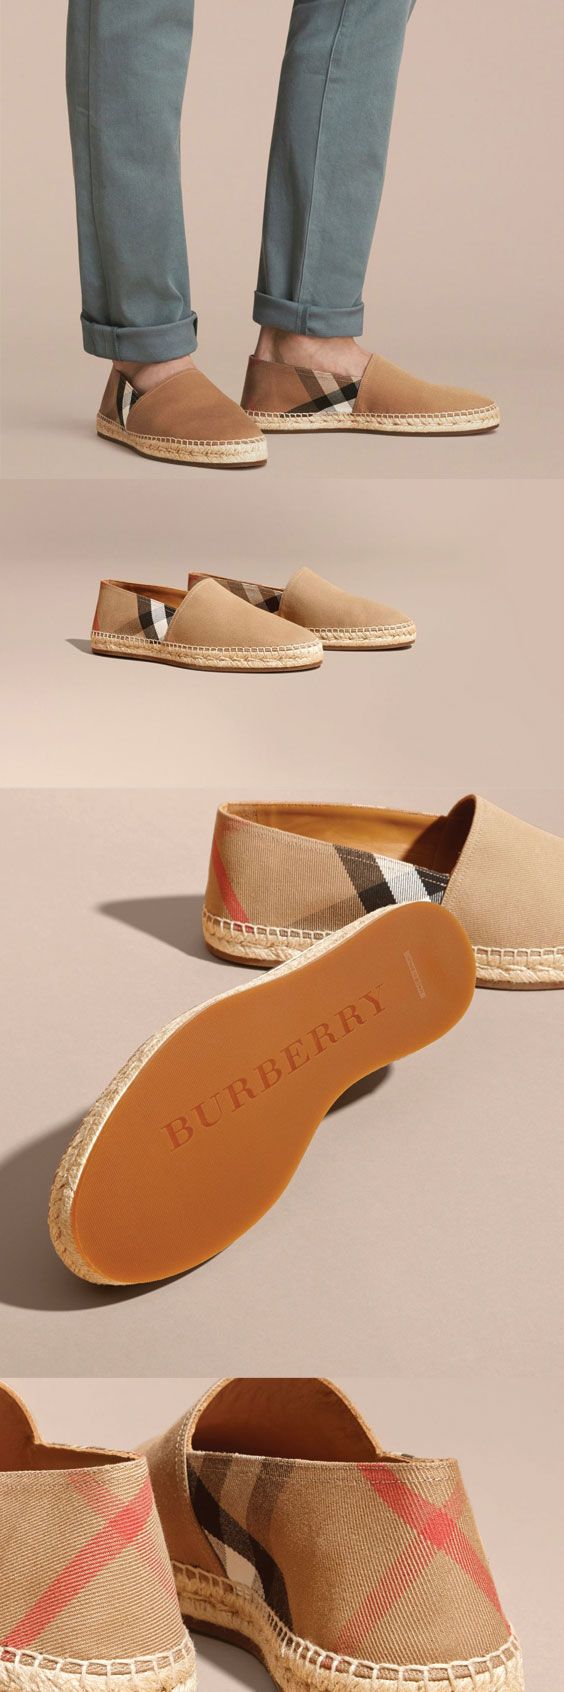 Burberry Canvas Check Espadrilles $395 #ads men shoes